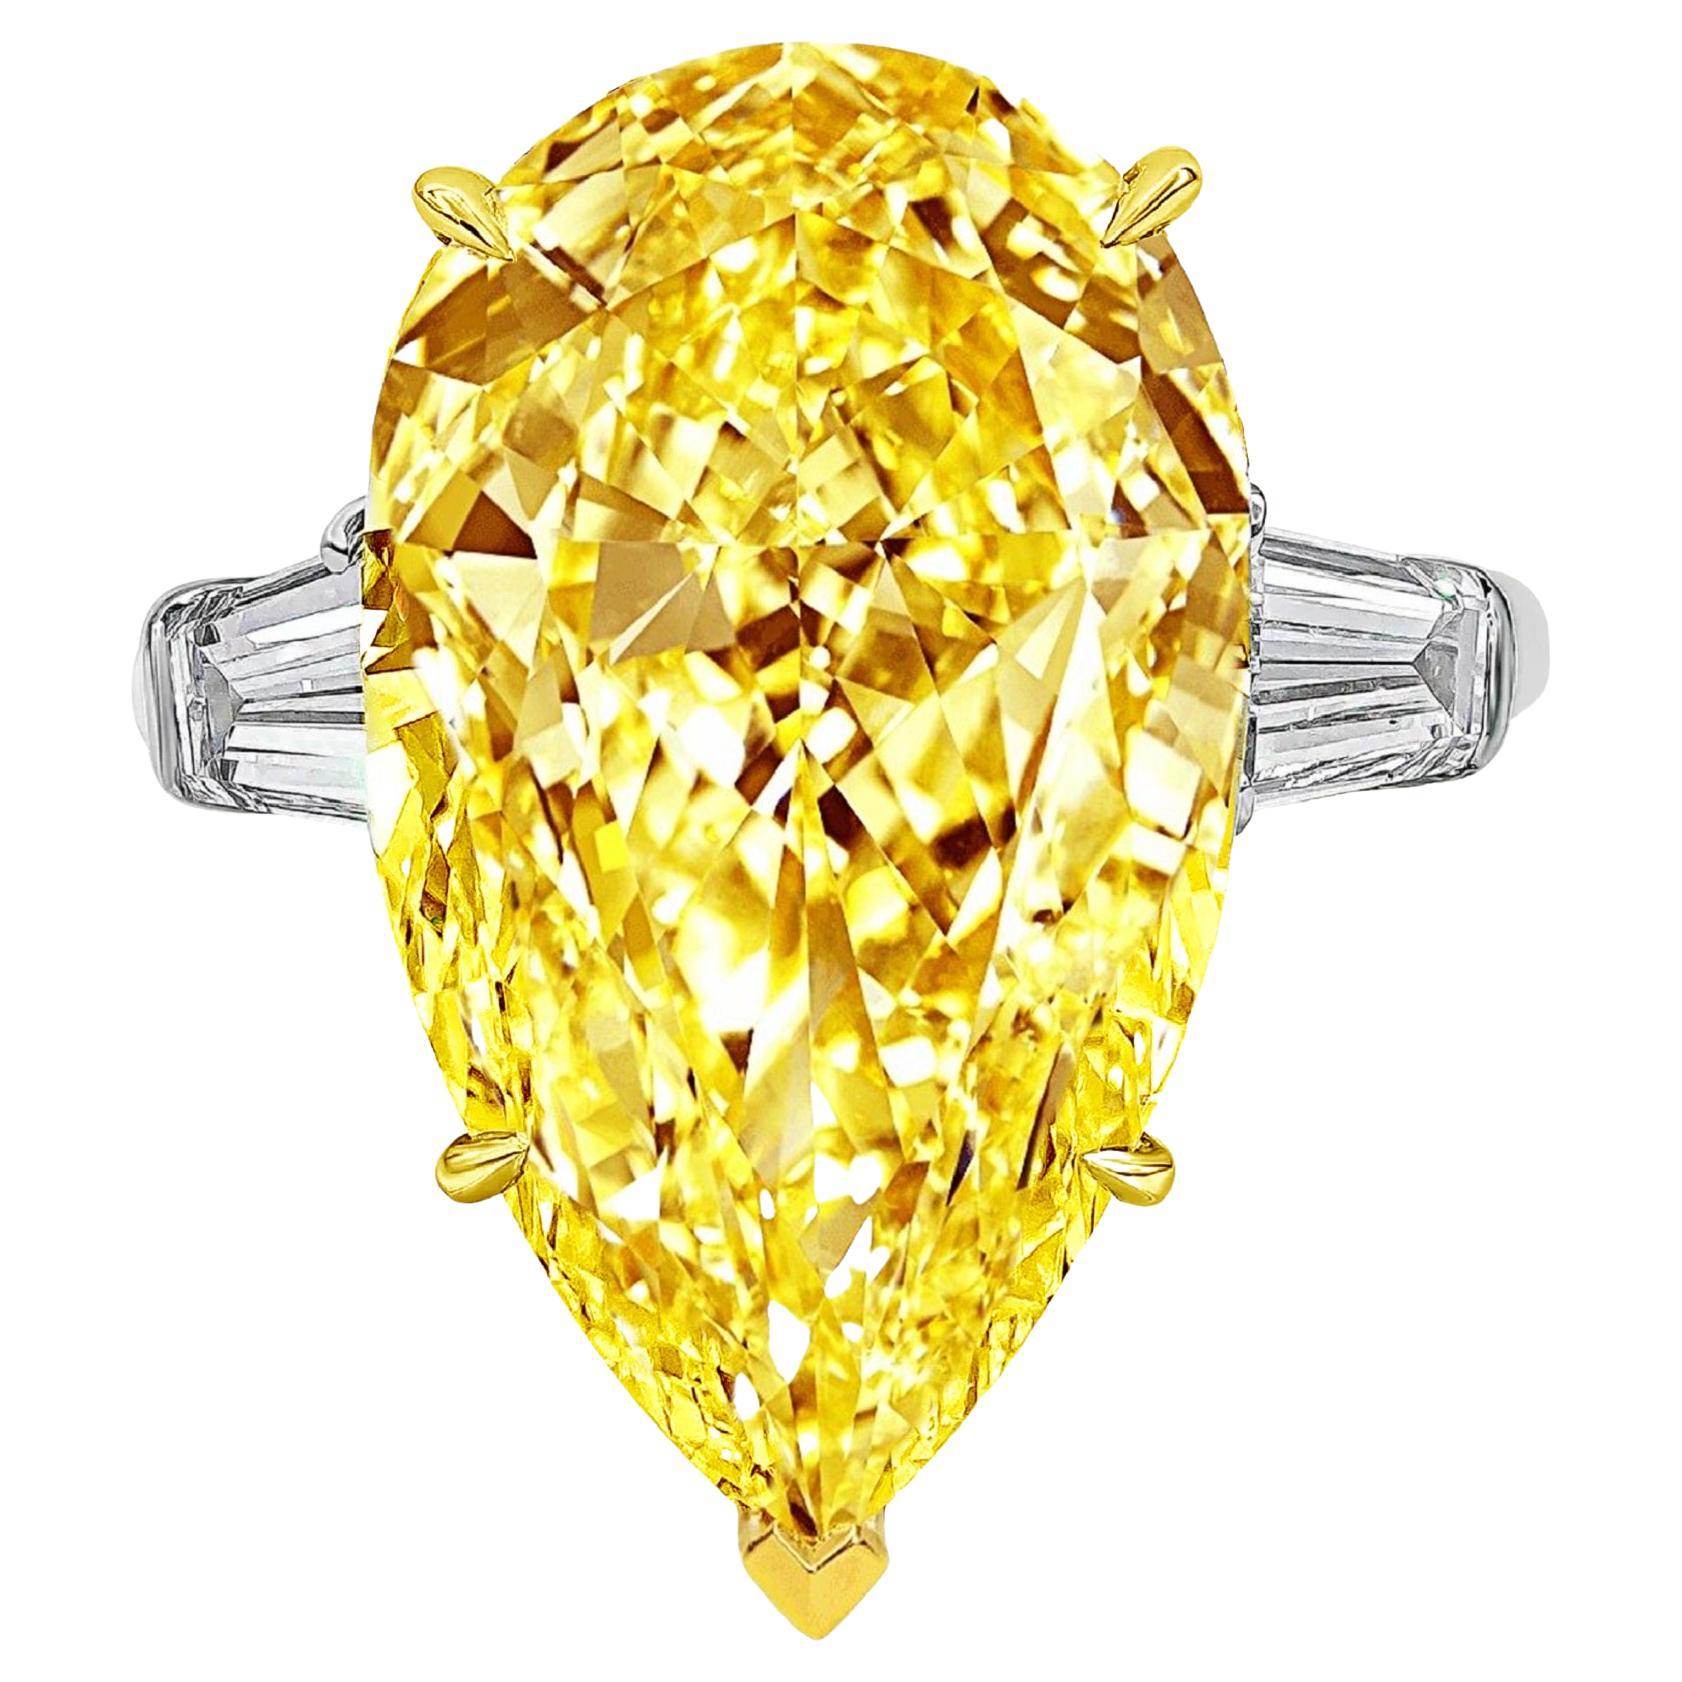 Anillo de diamantes talla pera de 11 quilates, amarillo intenso, certificado por GIA